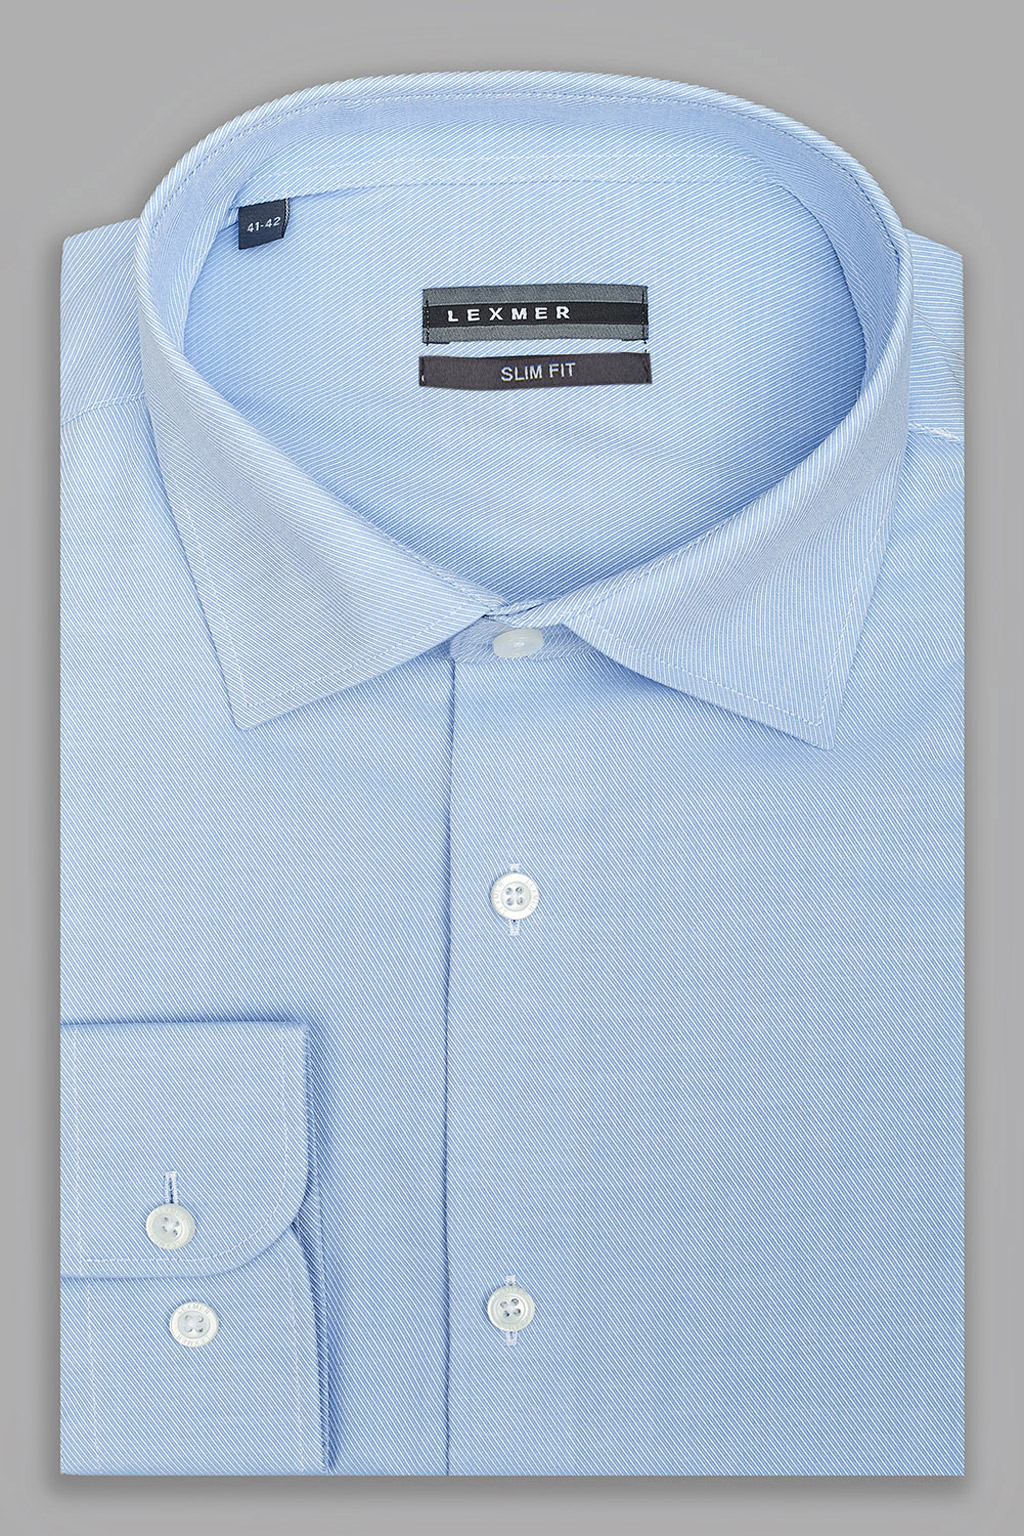 Голубая рубашка из жаккардовой ткани Slim Fit